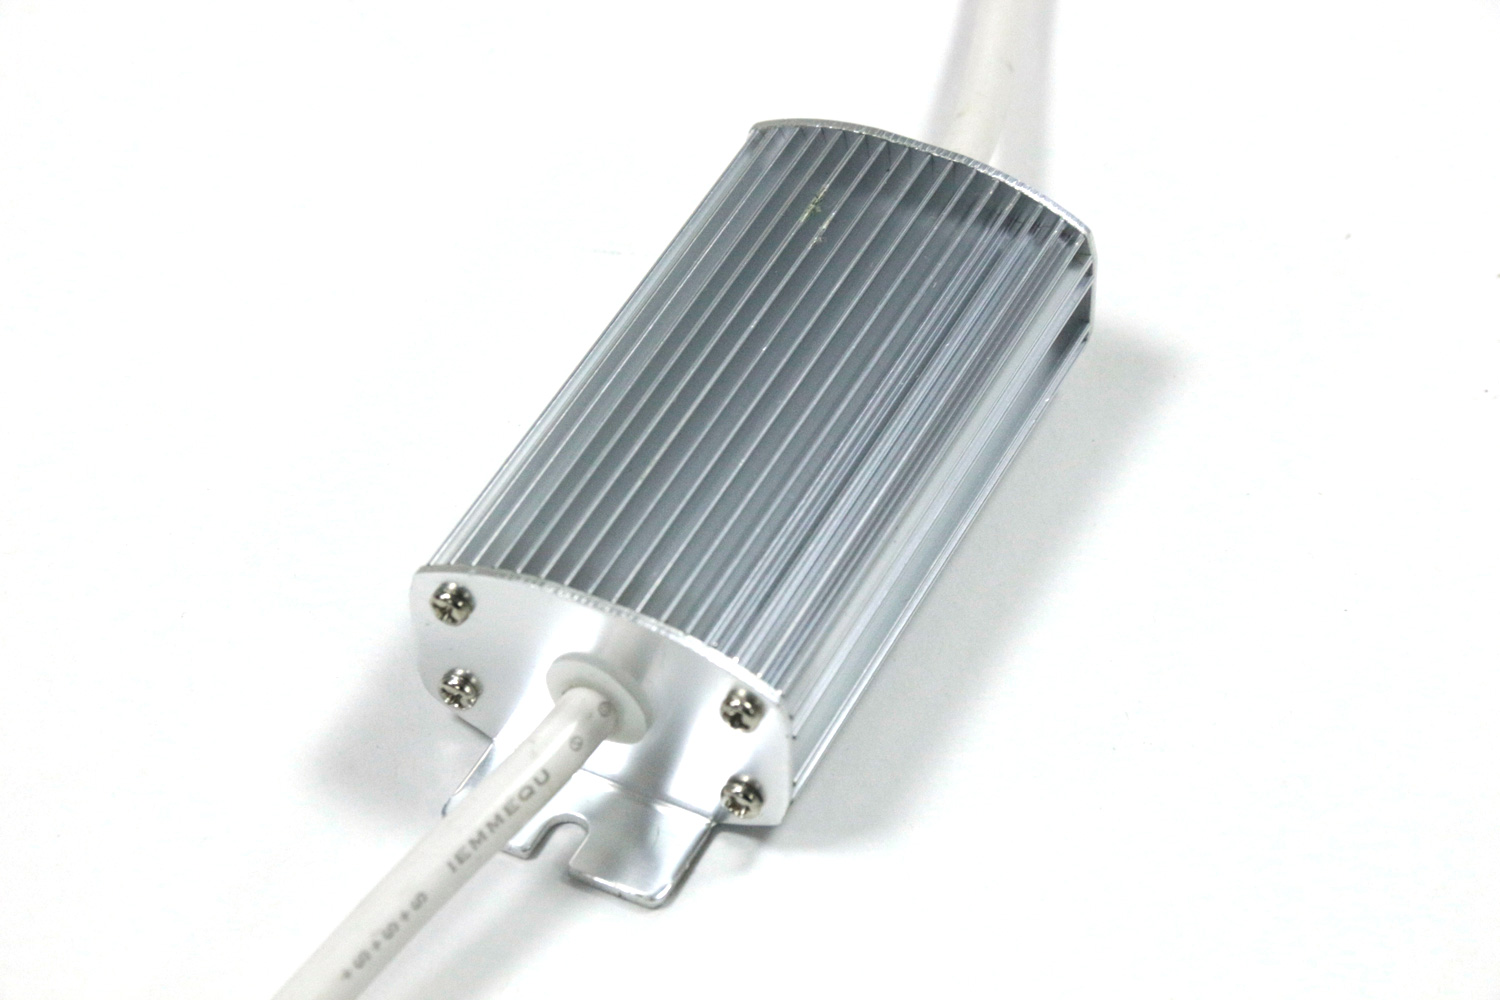 MG 7686 - High Voltage ETL Certification LED Strip Lights